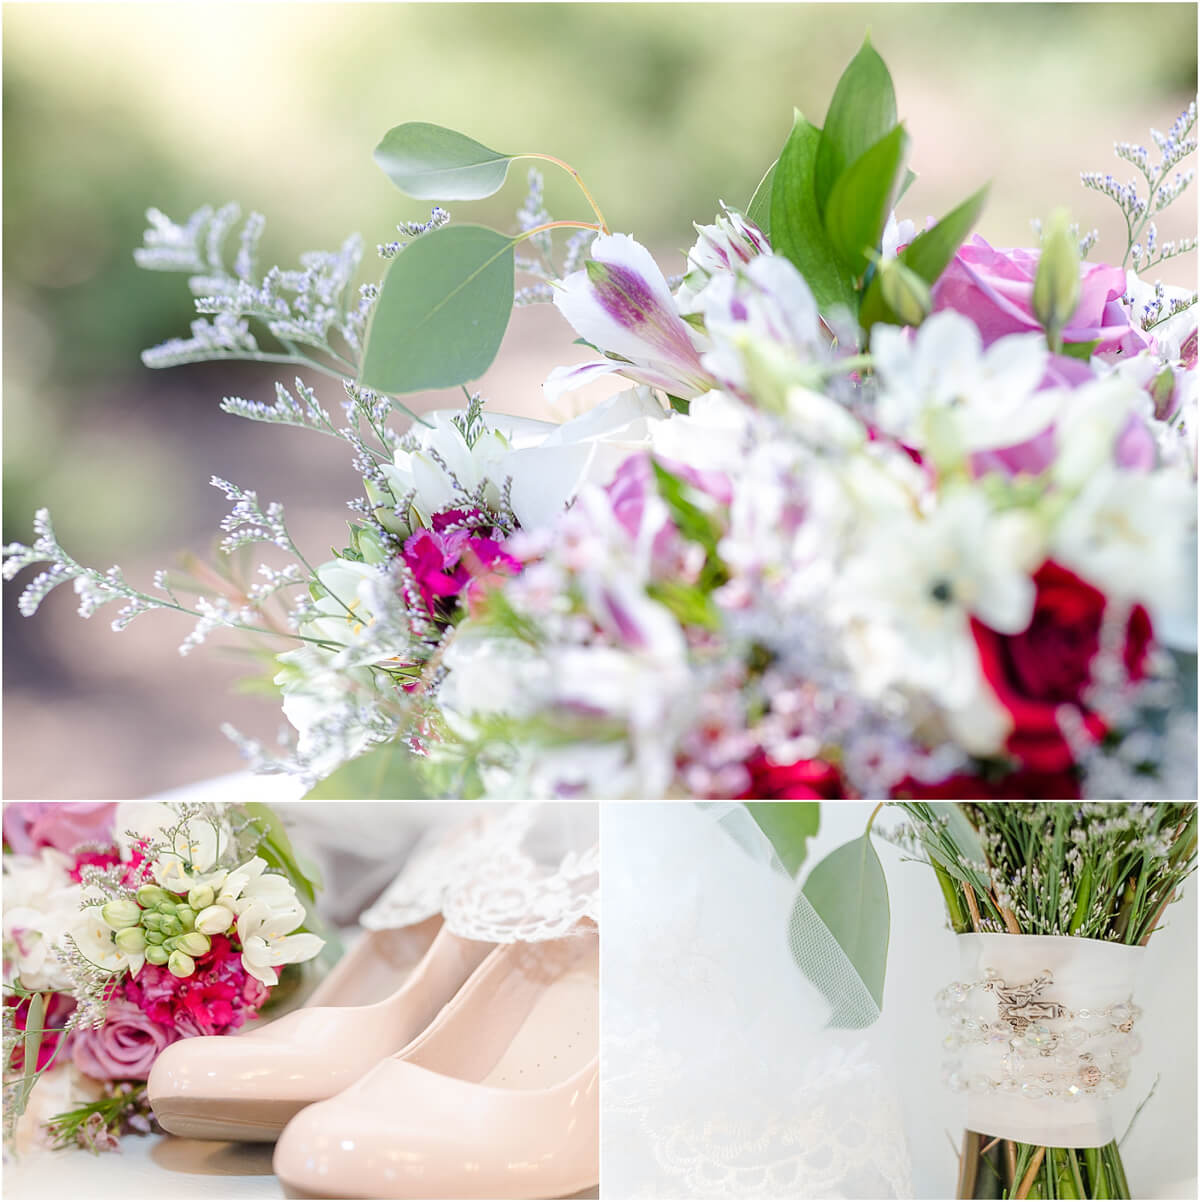 Bridal bouquet details